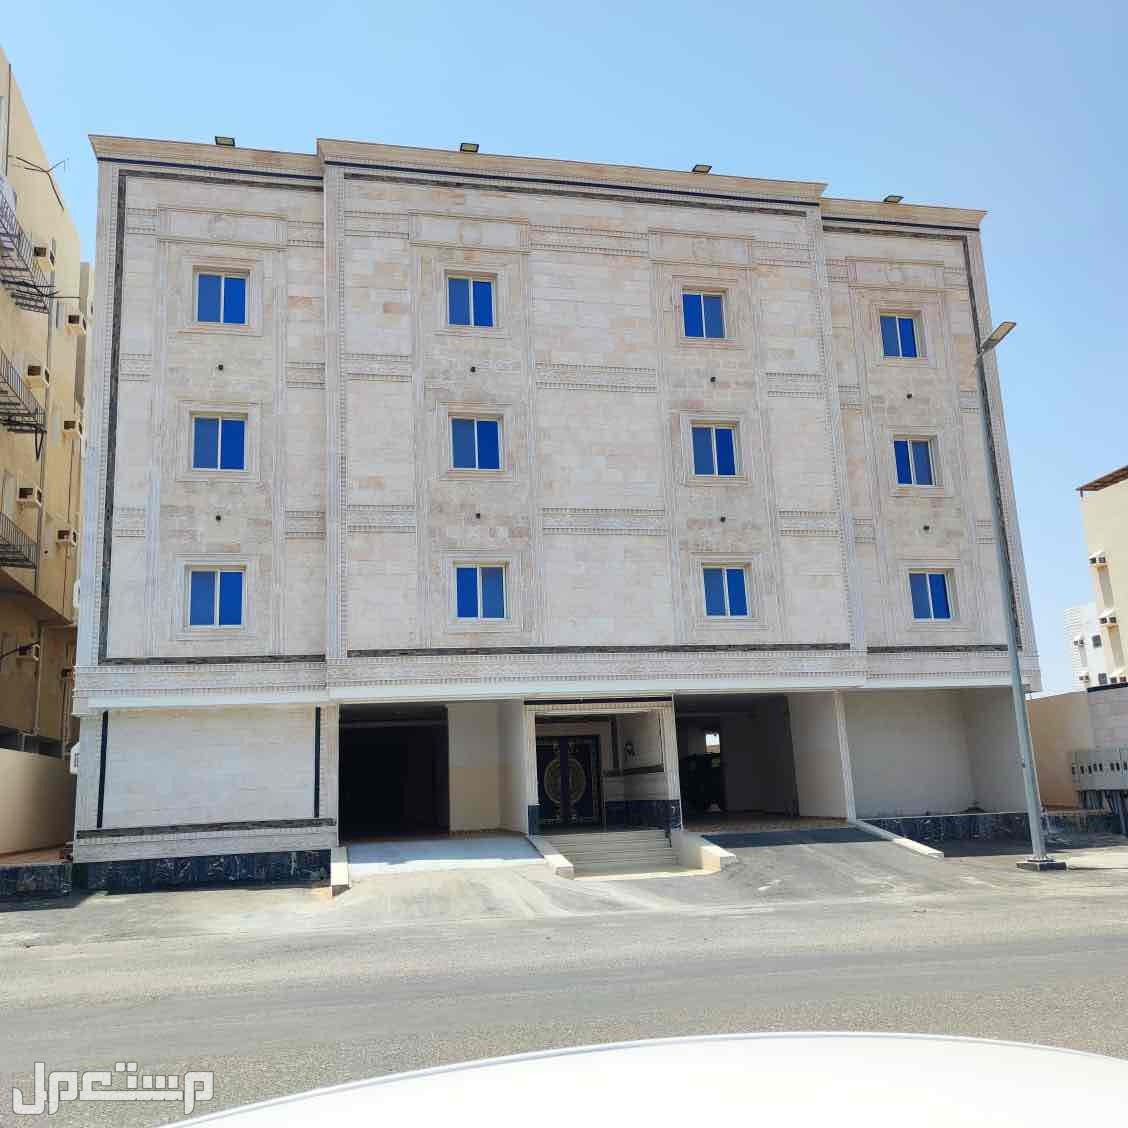 شقة للبيع في ولي العهد - مكة المكرمة بسعر 650 ألف ريال سعودي